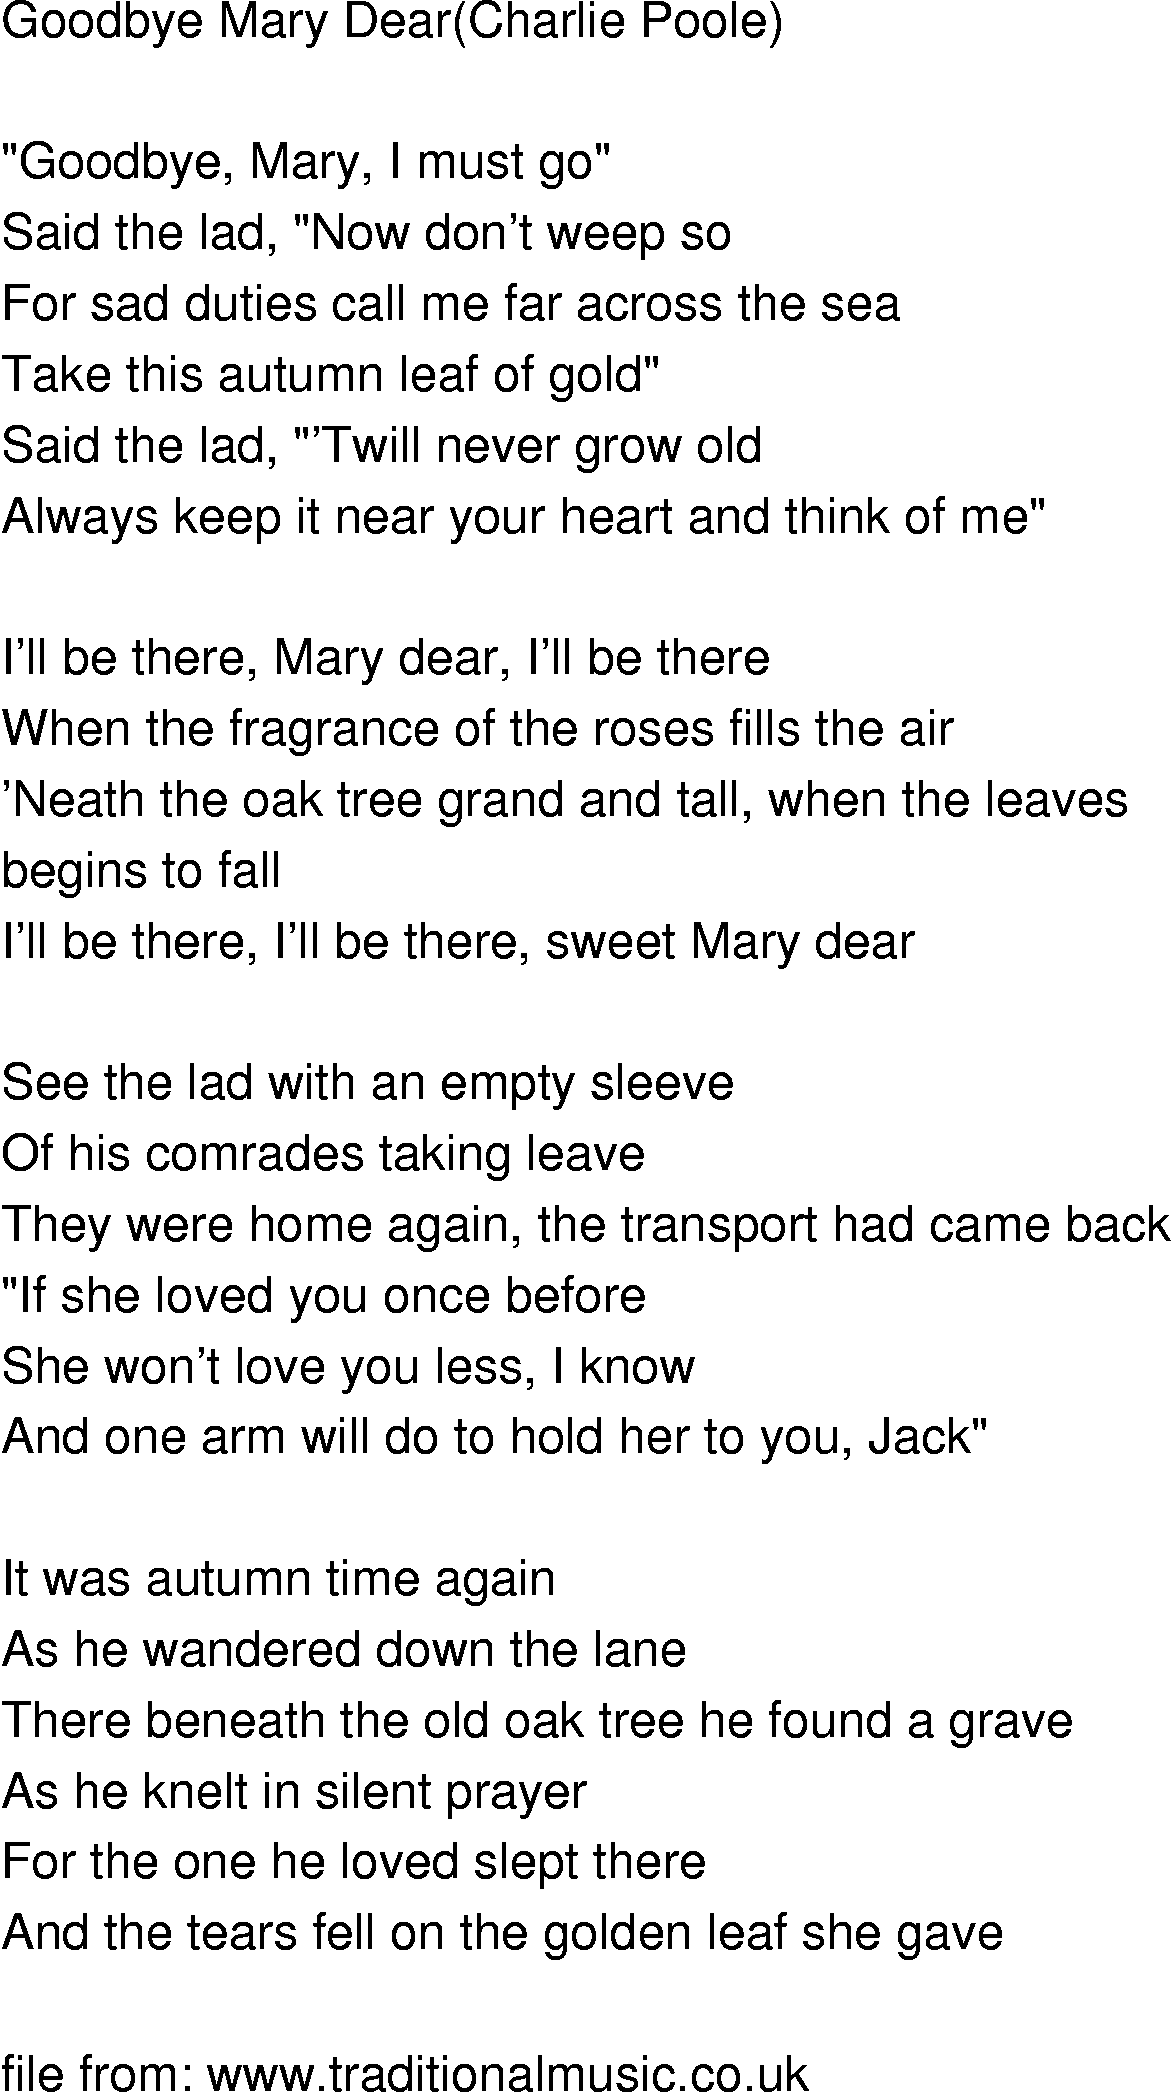 Old-Time (oldtimey) Song Lyrics - goodbye mary dear